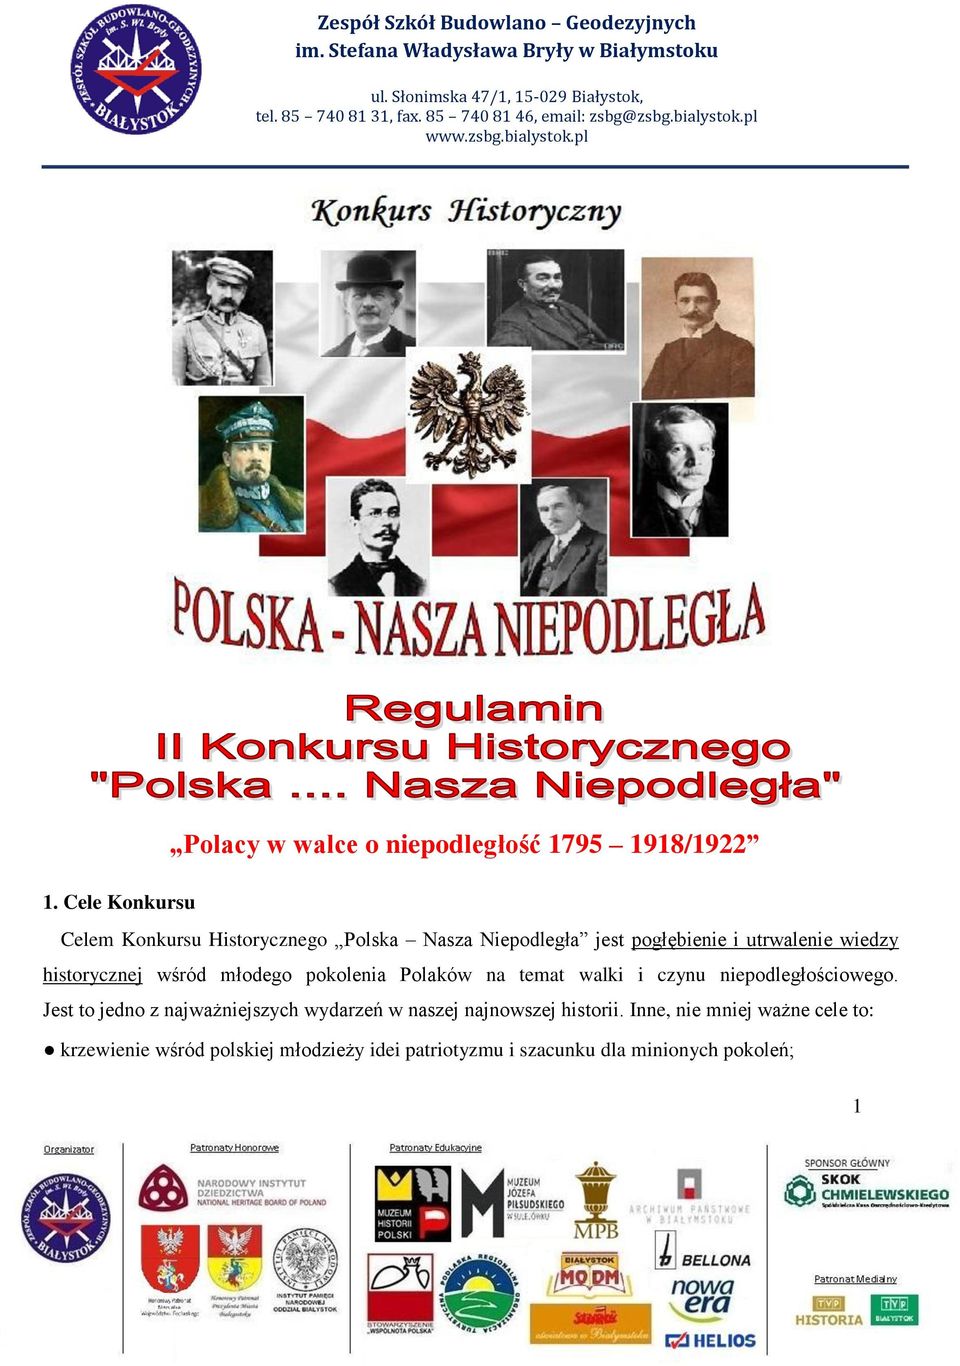 Cele Konkursu Celem Konkursu Historycznego Polska Nasza Niepodległa jest pogłębienie i utrwalenie wiedzy historycznej wśród młodego pokolenia Polaków na temat